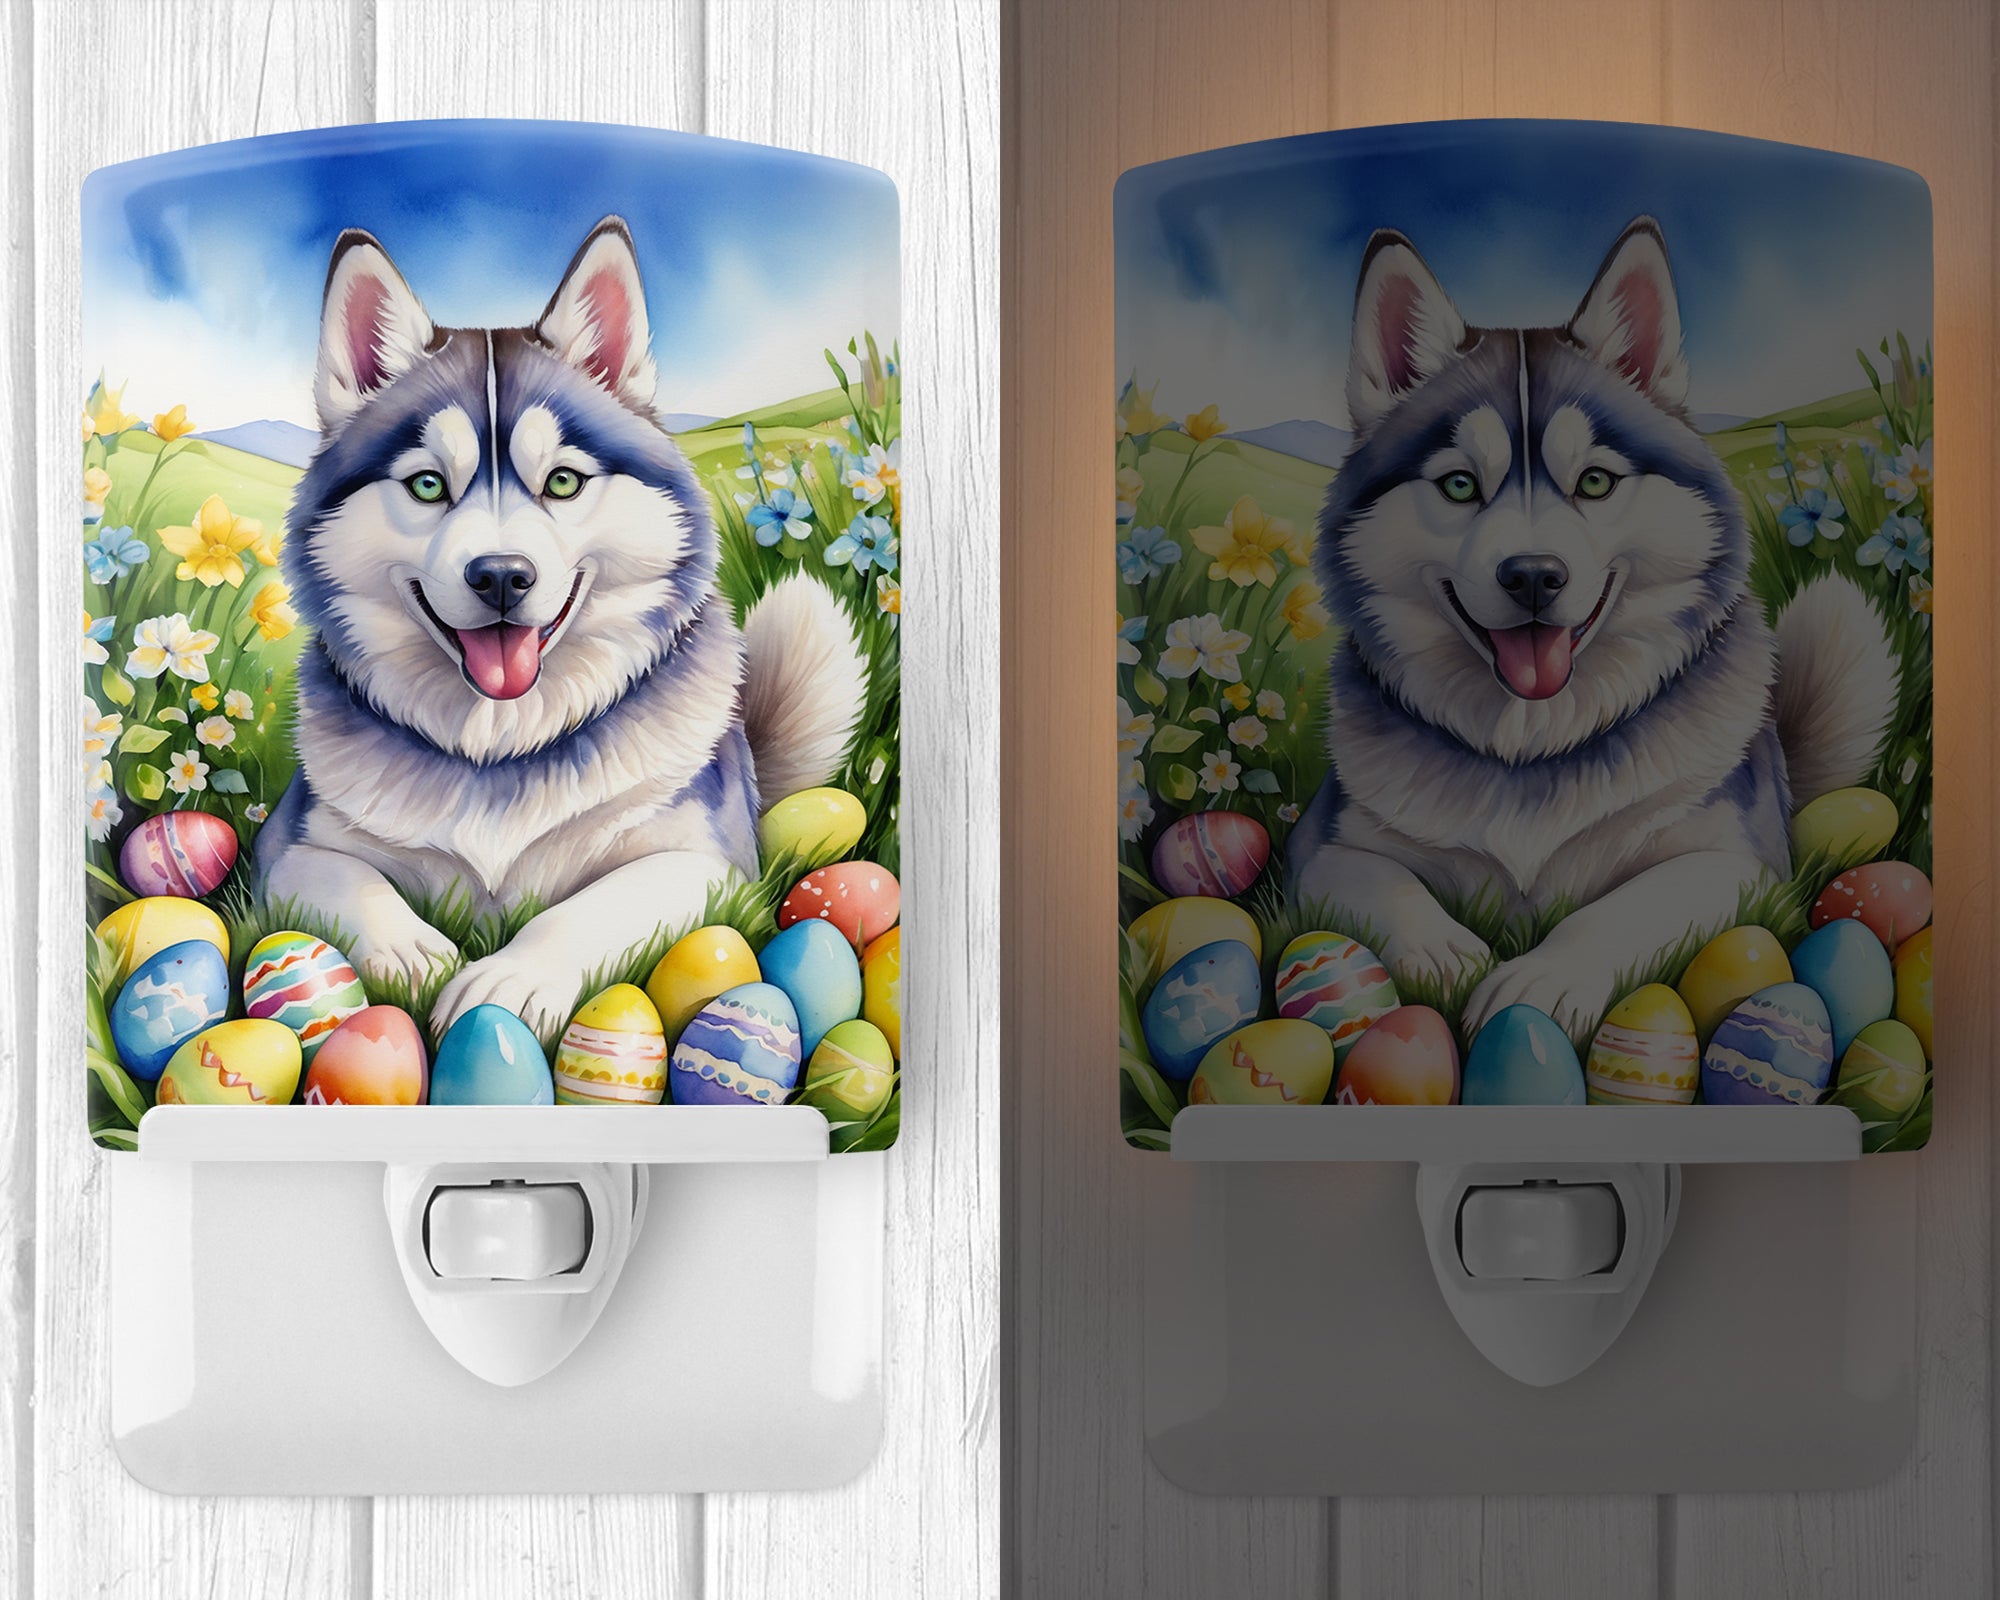 Siberian Husky Easter Egg Hunt Ceramic Night Light